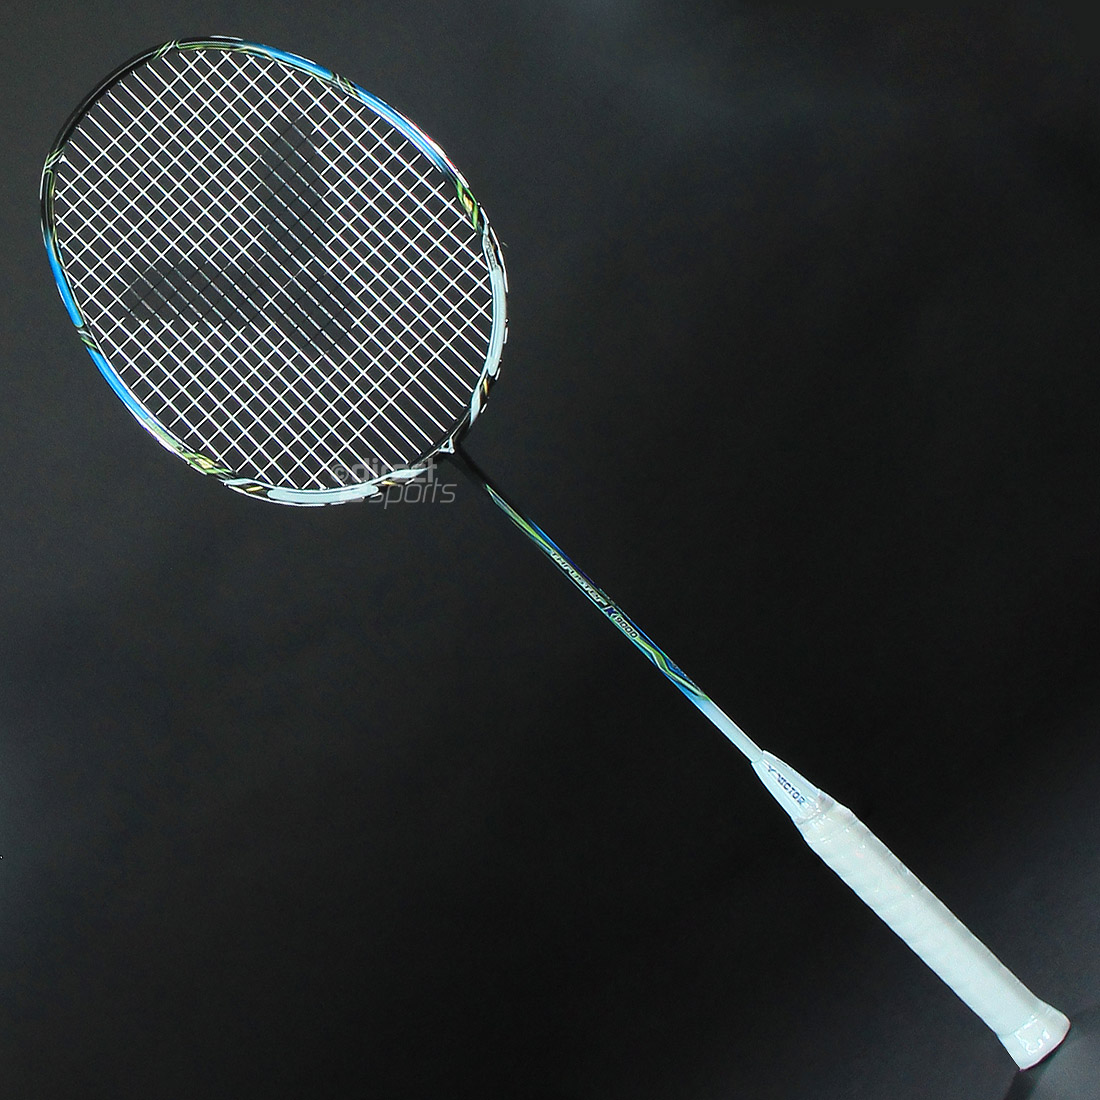 Y.Y.Yonex VTI Force ii Badminton Racket Full Size